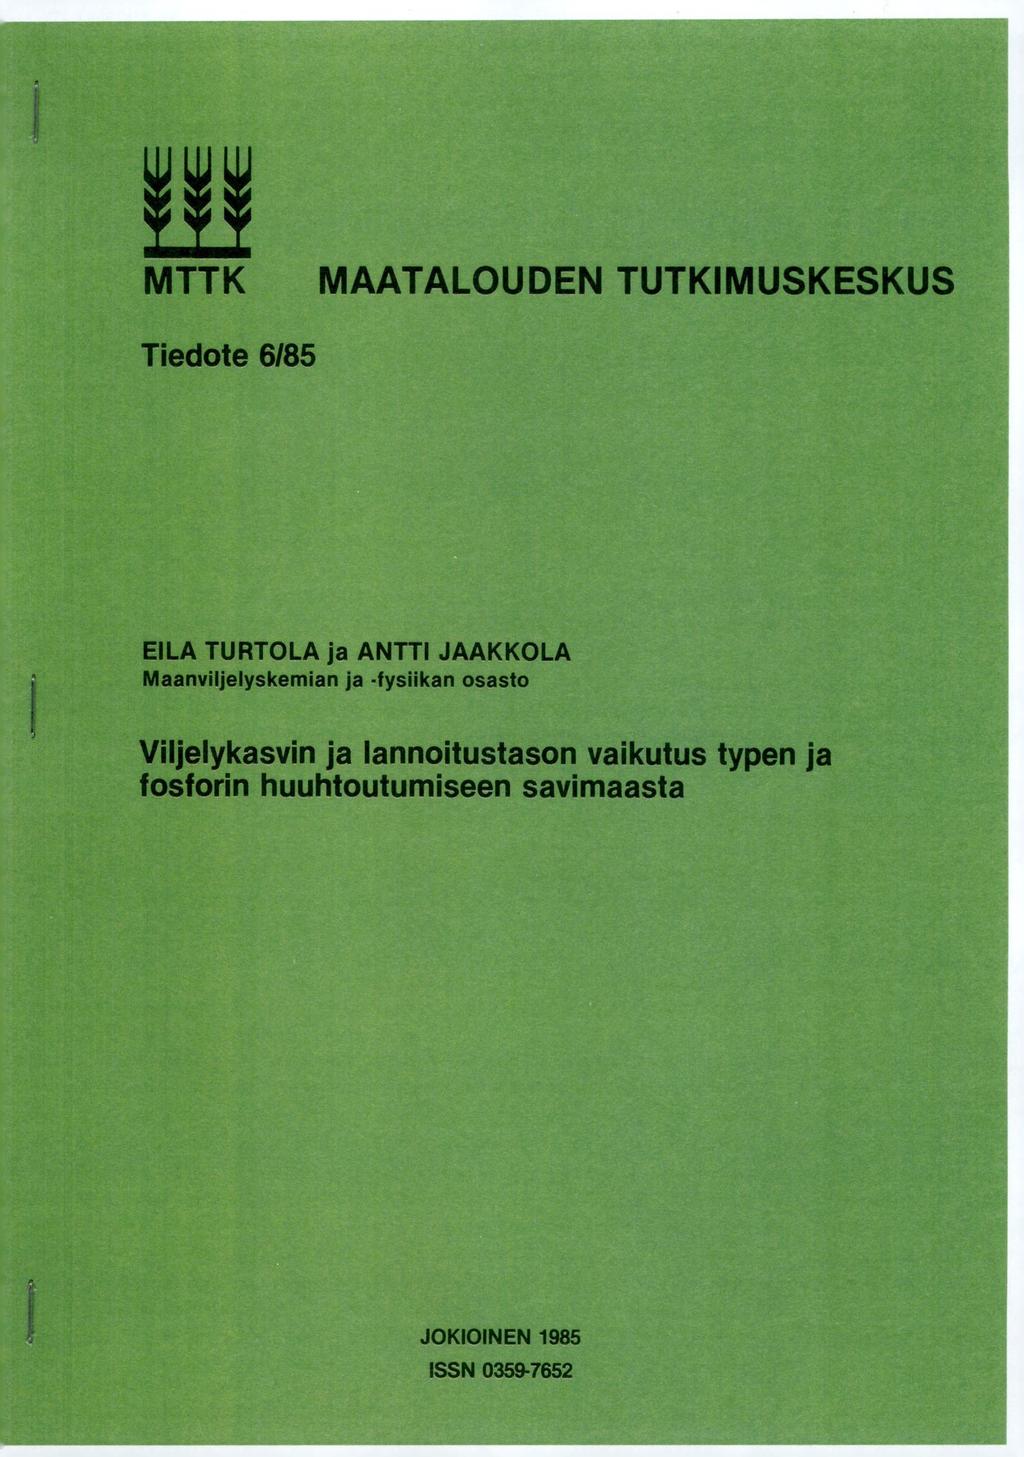 MTTK MAATALOUDEN TUTKIMUSKESKUS Tiedote 6/85 EILA TURTOLA ja ANTTI JAAKKOLA Maanviljelyskemian ja -fysiikan osasto